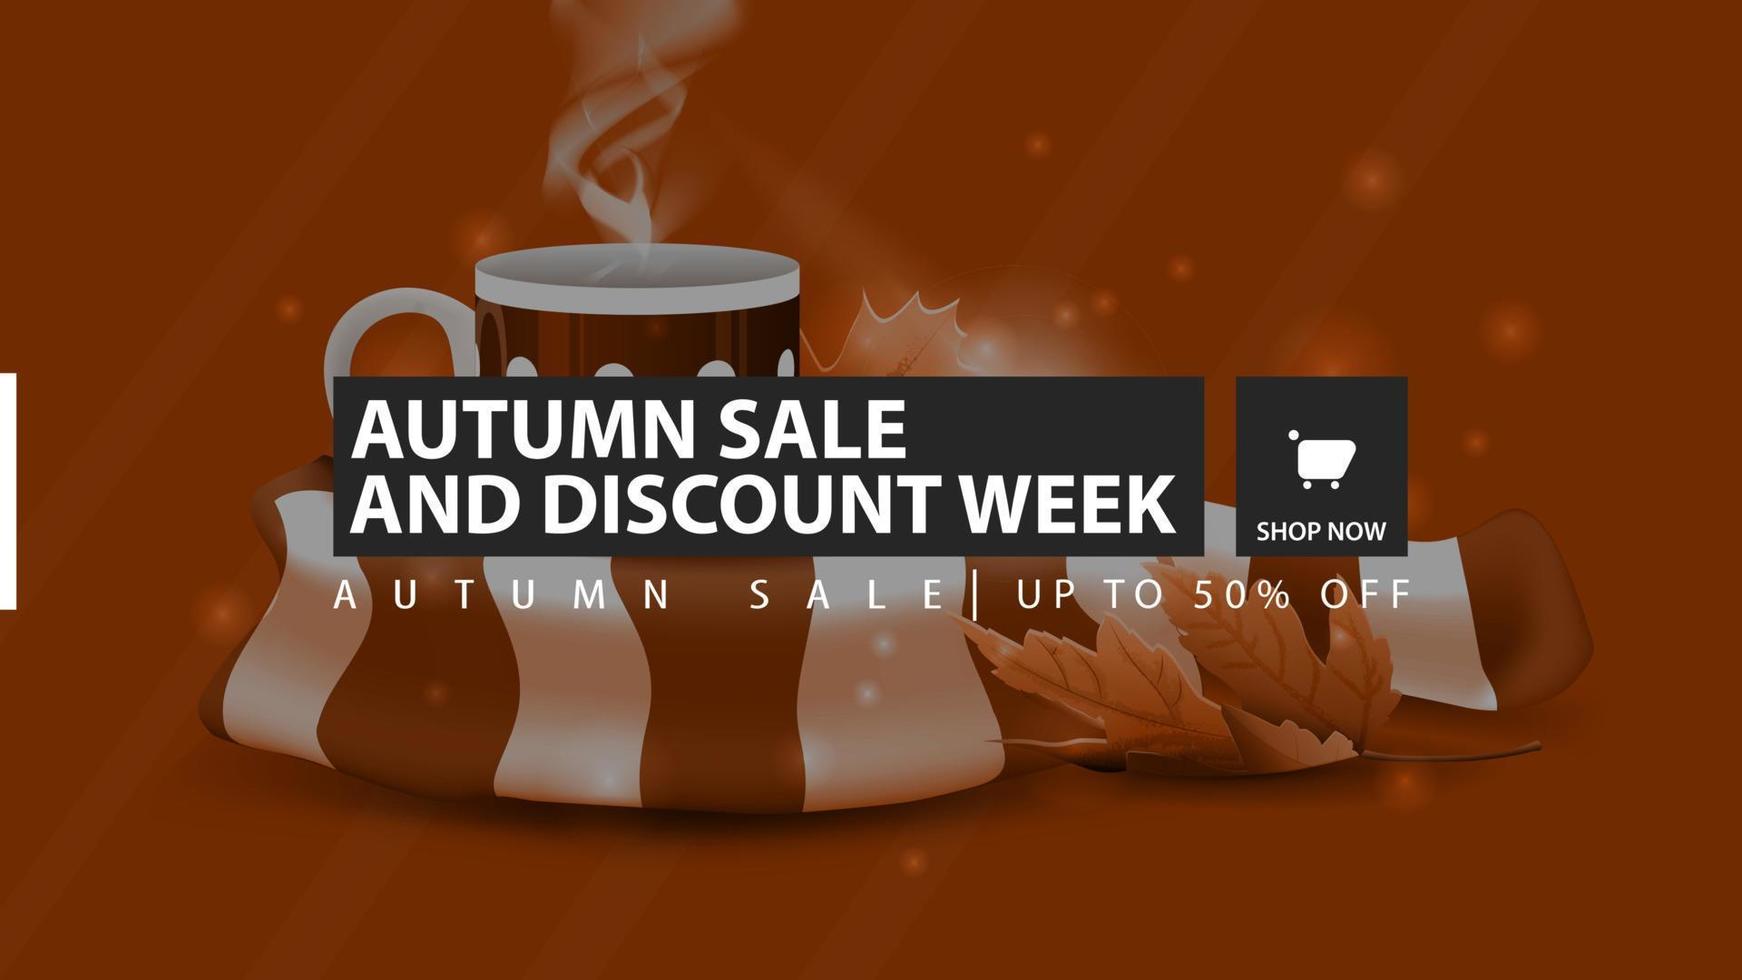 Semana de venda e desconto de outono, banner laranja de desconto horizontal com uma caneca de chá quente e um lenço quente no fundo vetor